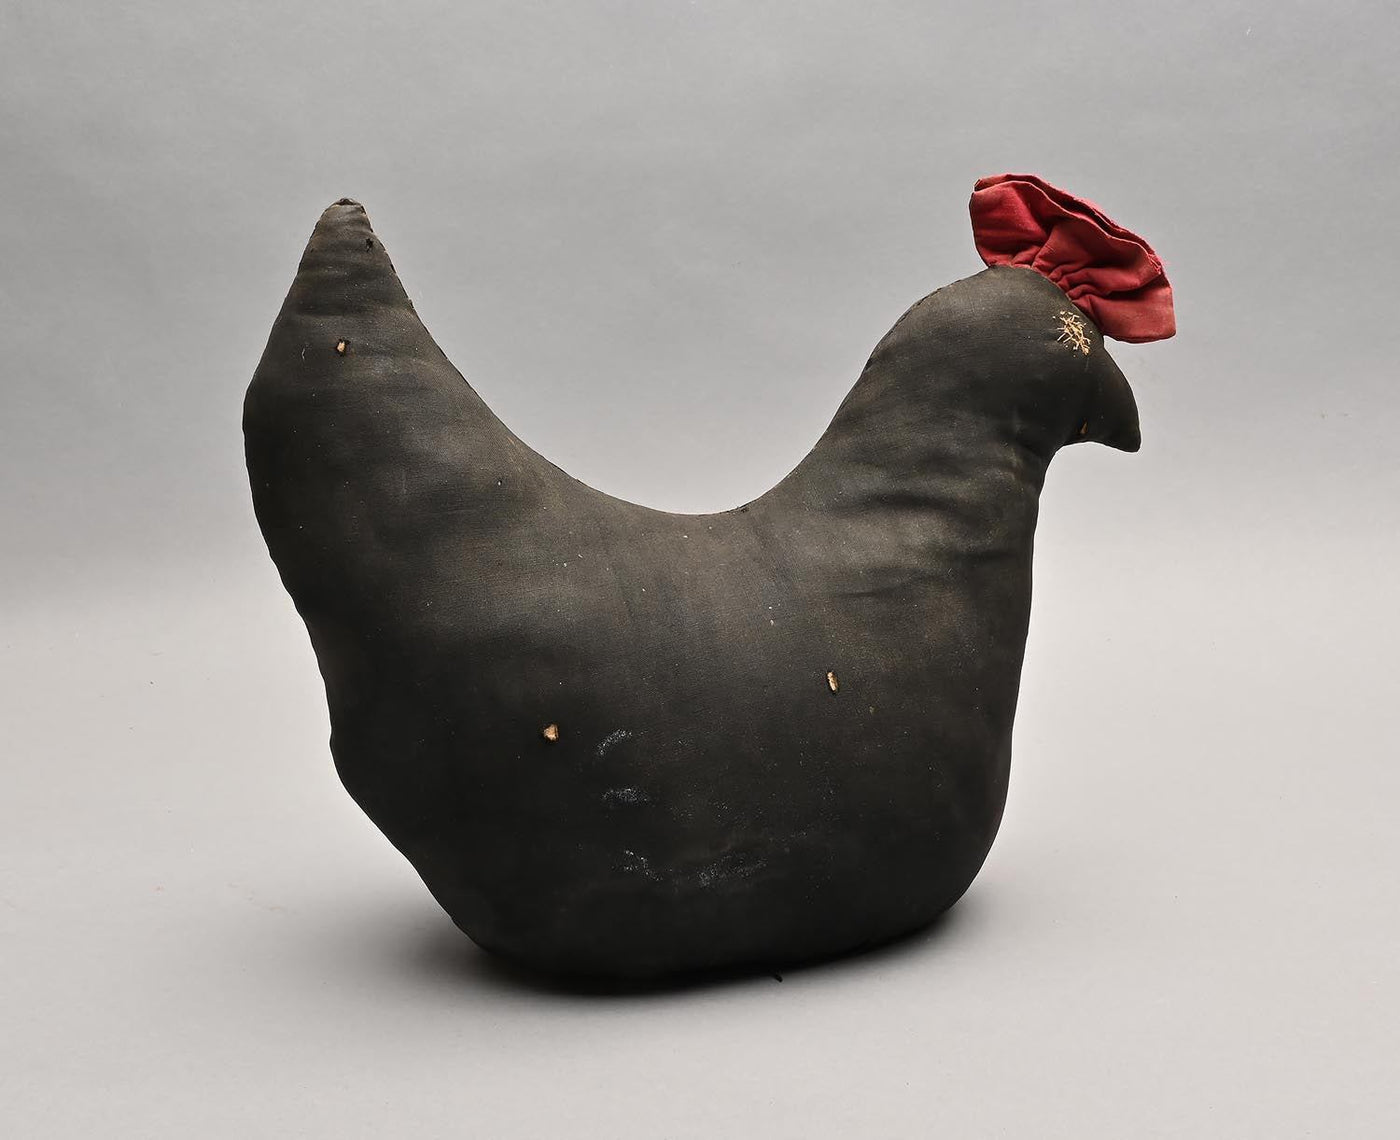 1455020-mennonite-chicken-folk-art-toy-2